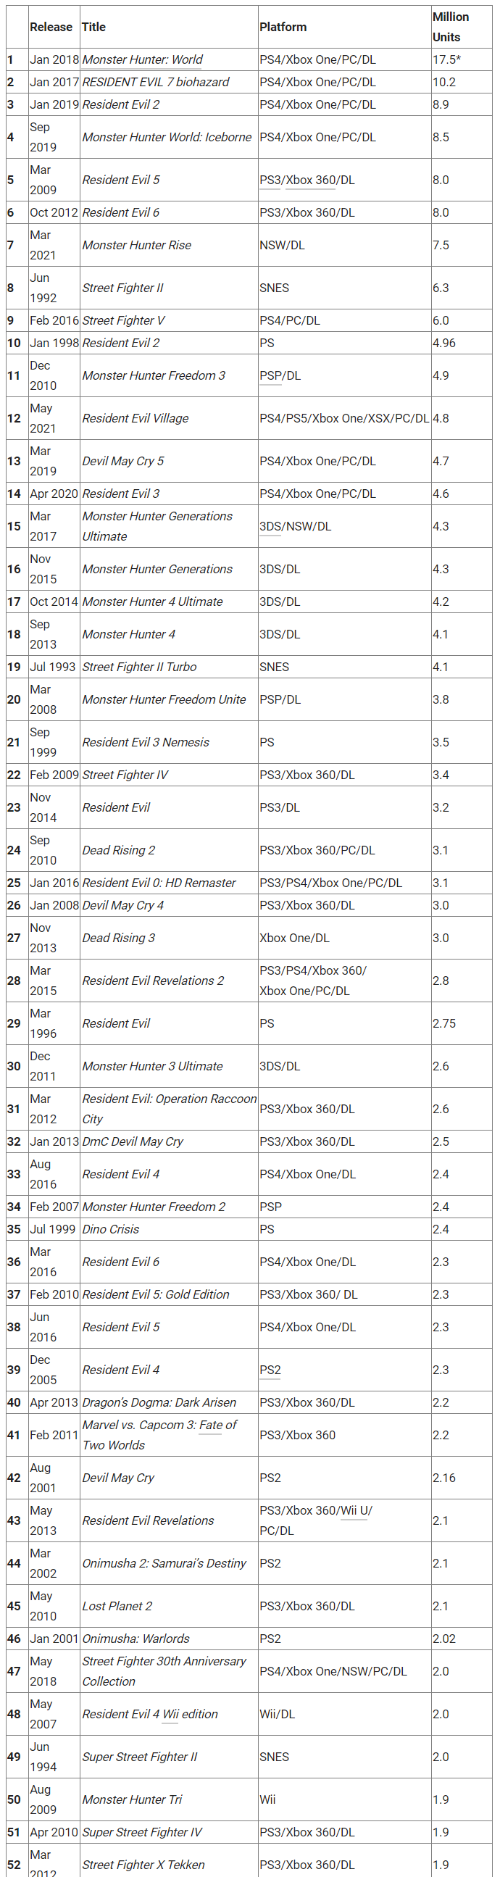 卡普空白金销量榜更新 《怪物猎人物语2》首次登榜